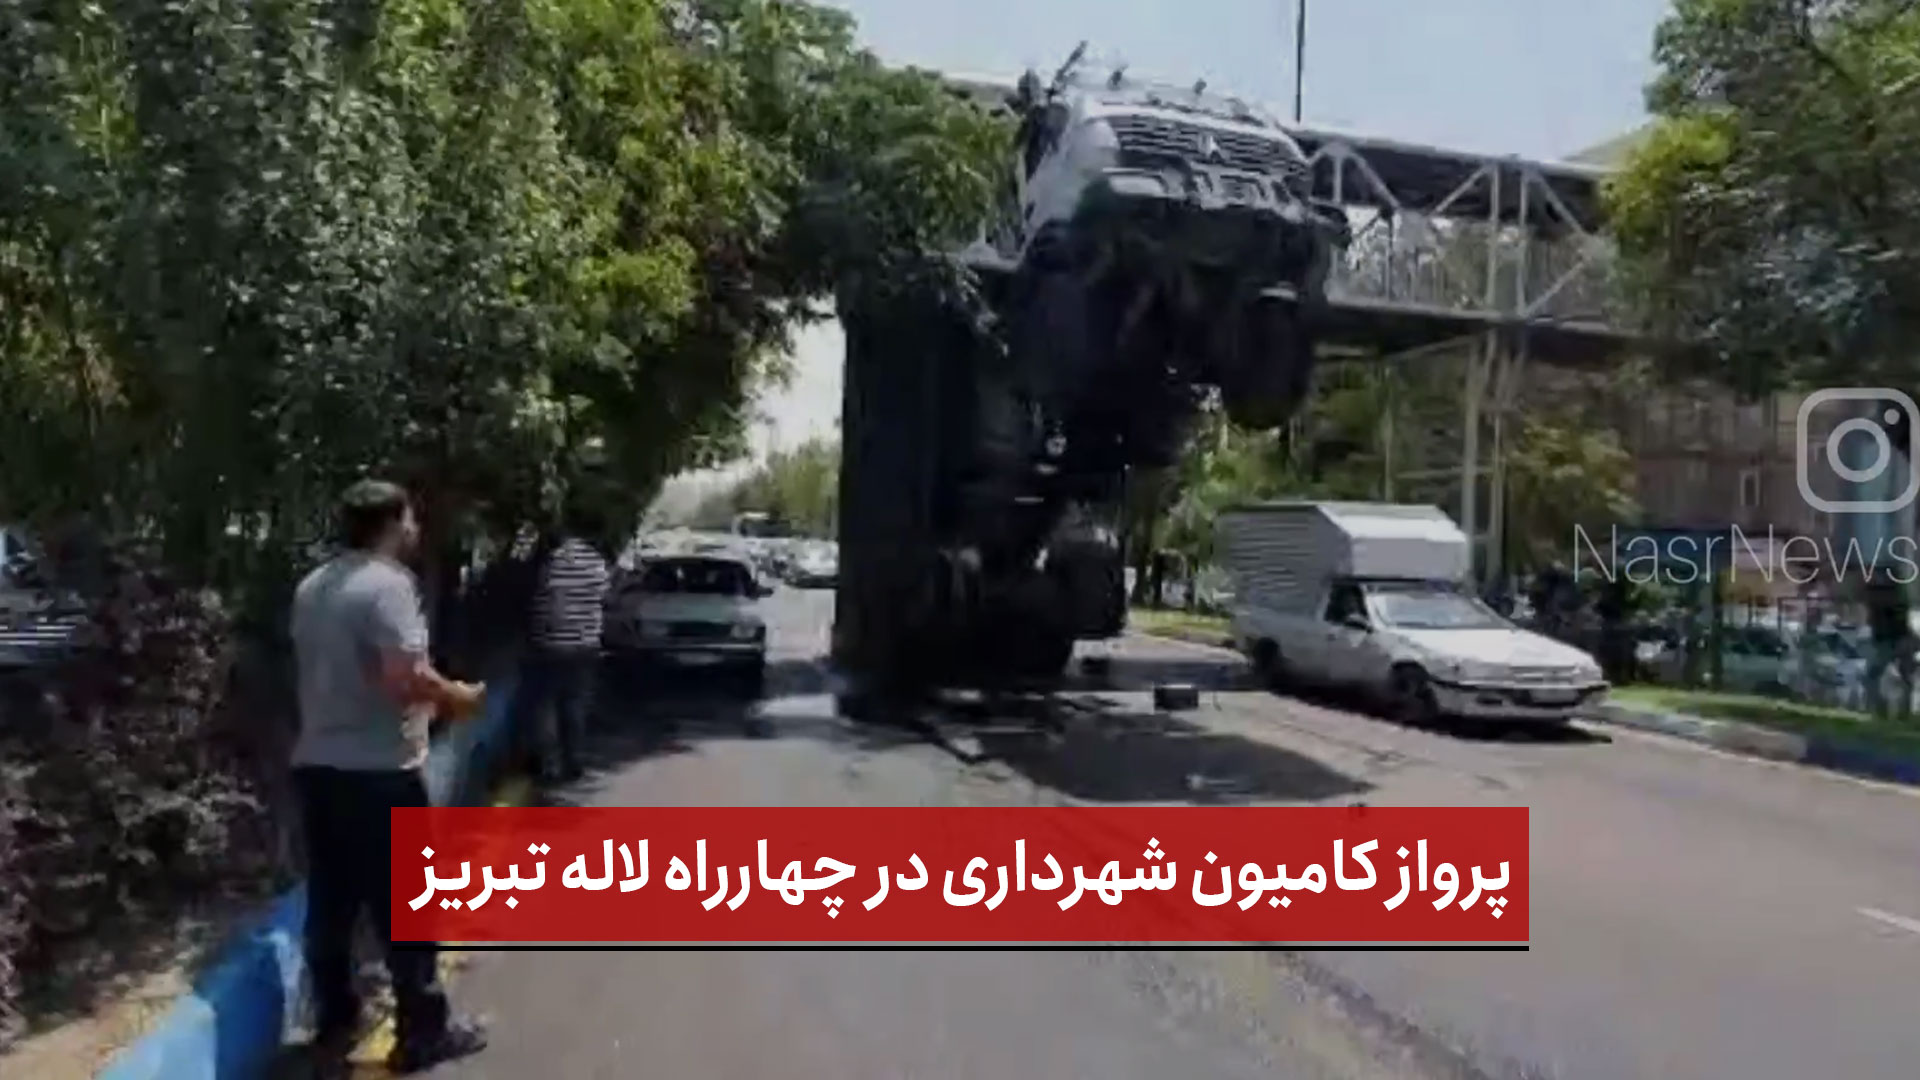 فیلم | پرواز کامیون شهرداری در چهارراه لاله تبریز